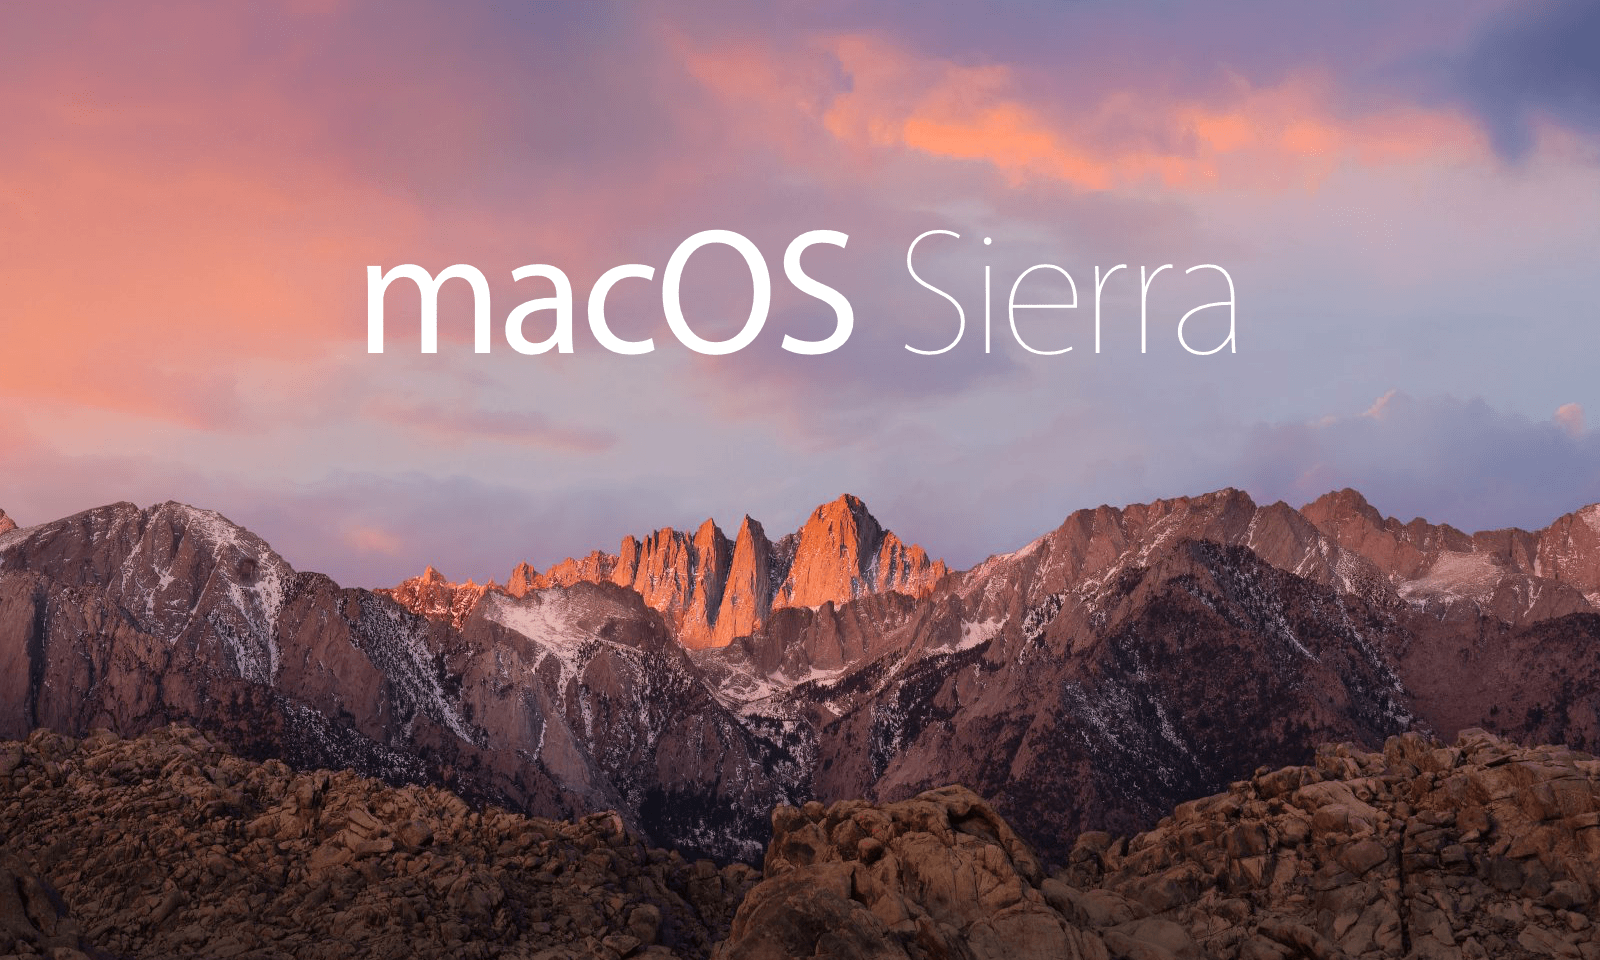 Crossover Mac Os Sierra